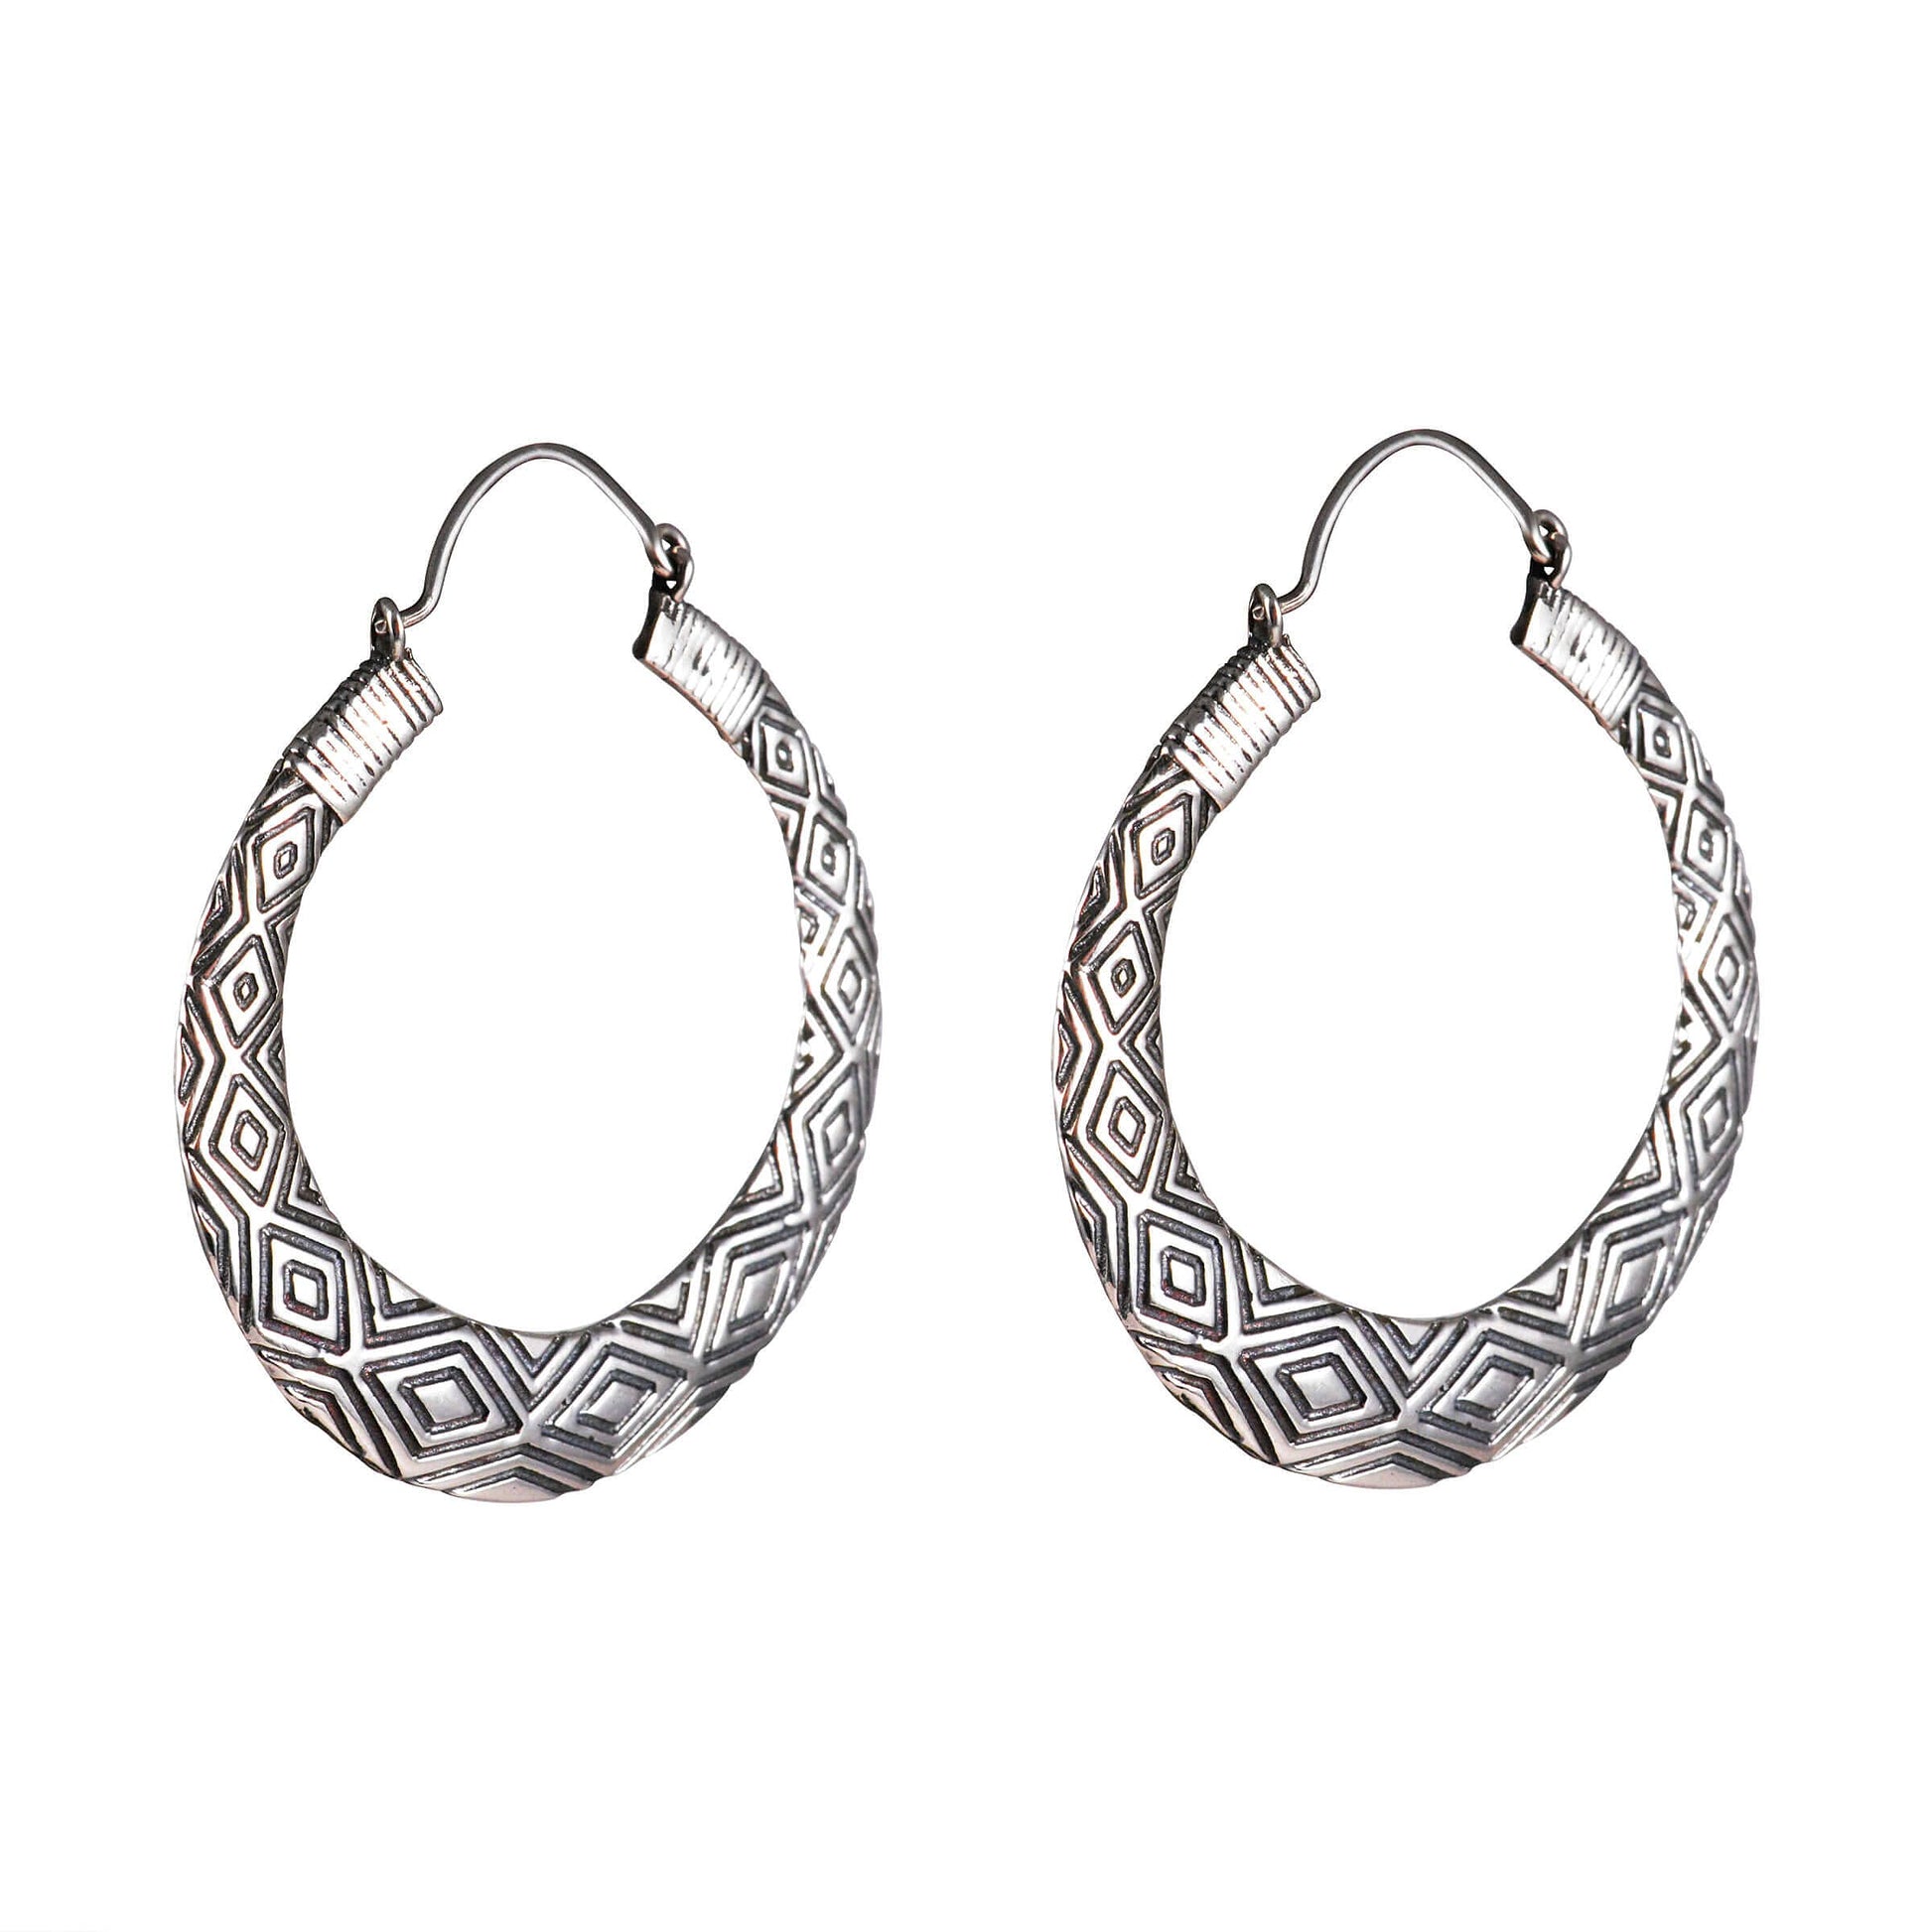 Tribal Earrings Silver Round Bali 2